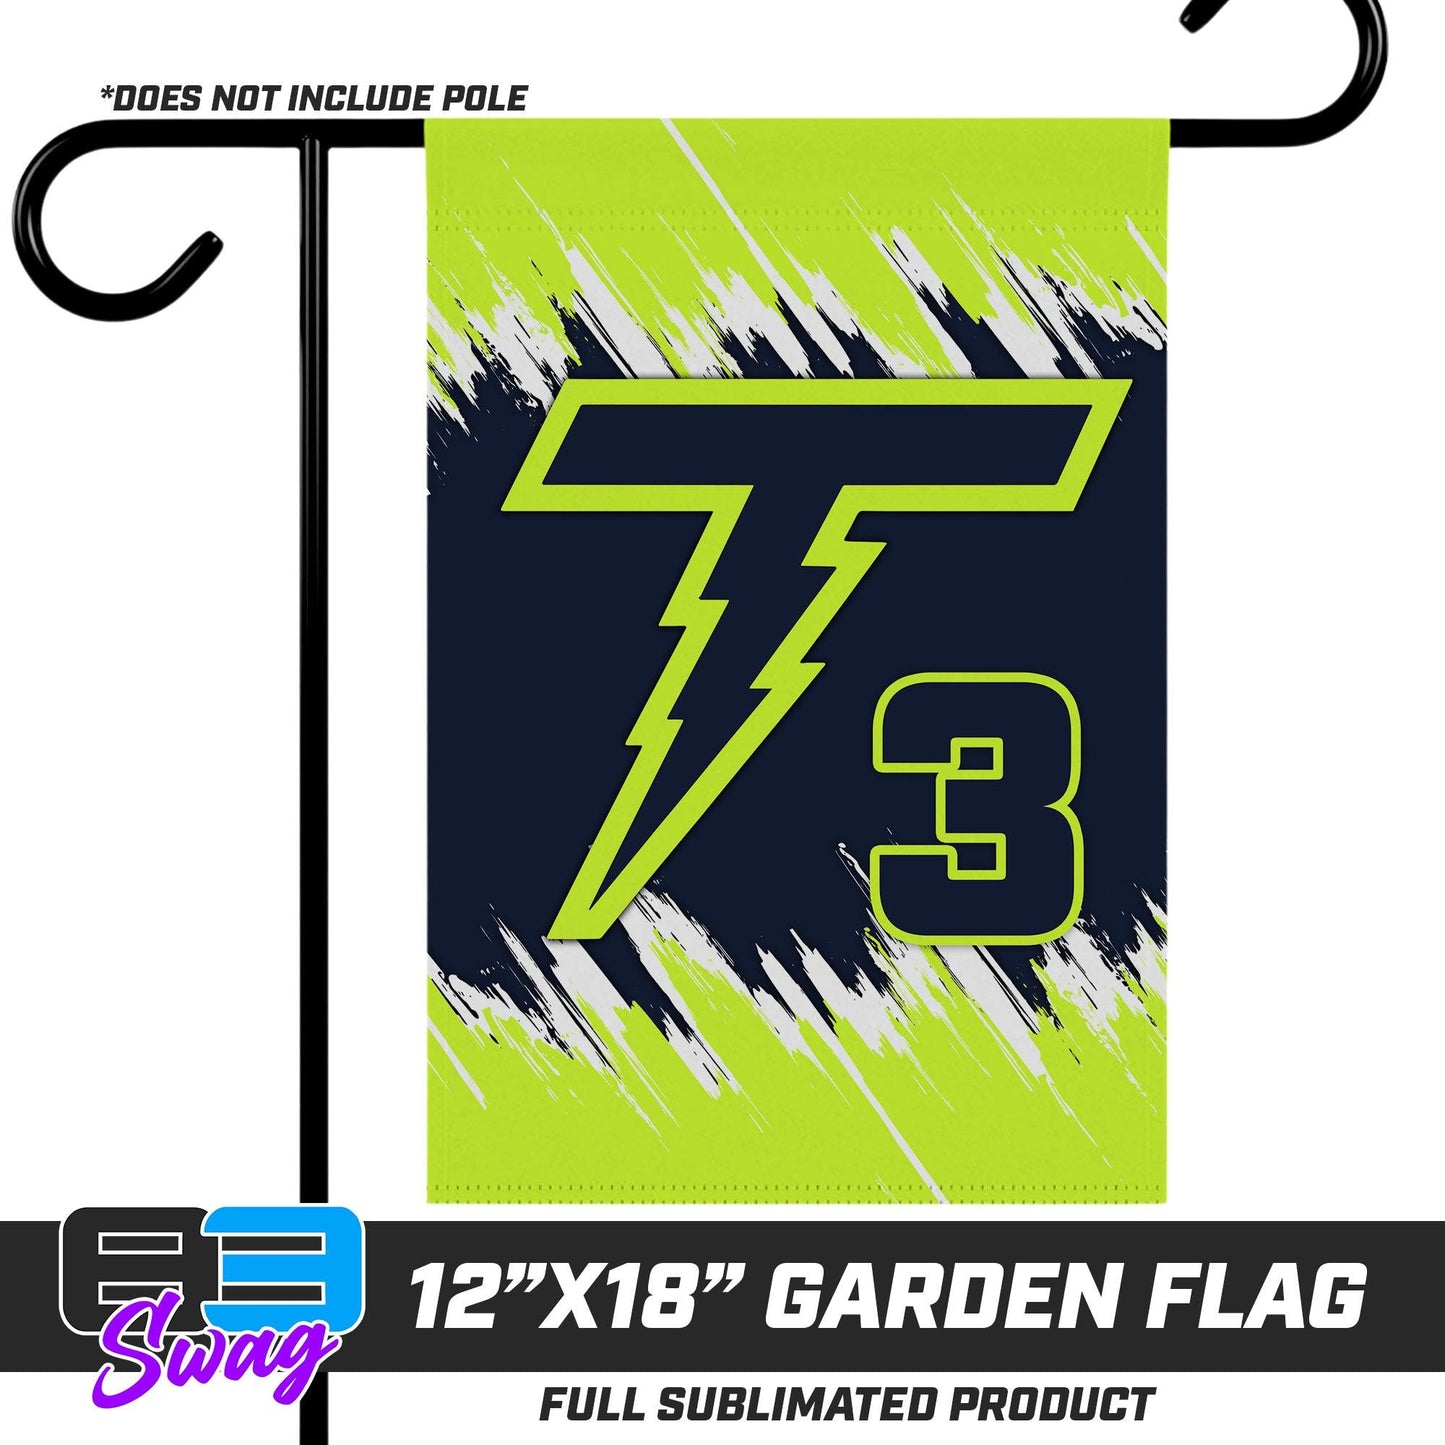 12"x18" Garden Flag - Ponte Vedra Thunder Baseball - 83Swag